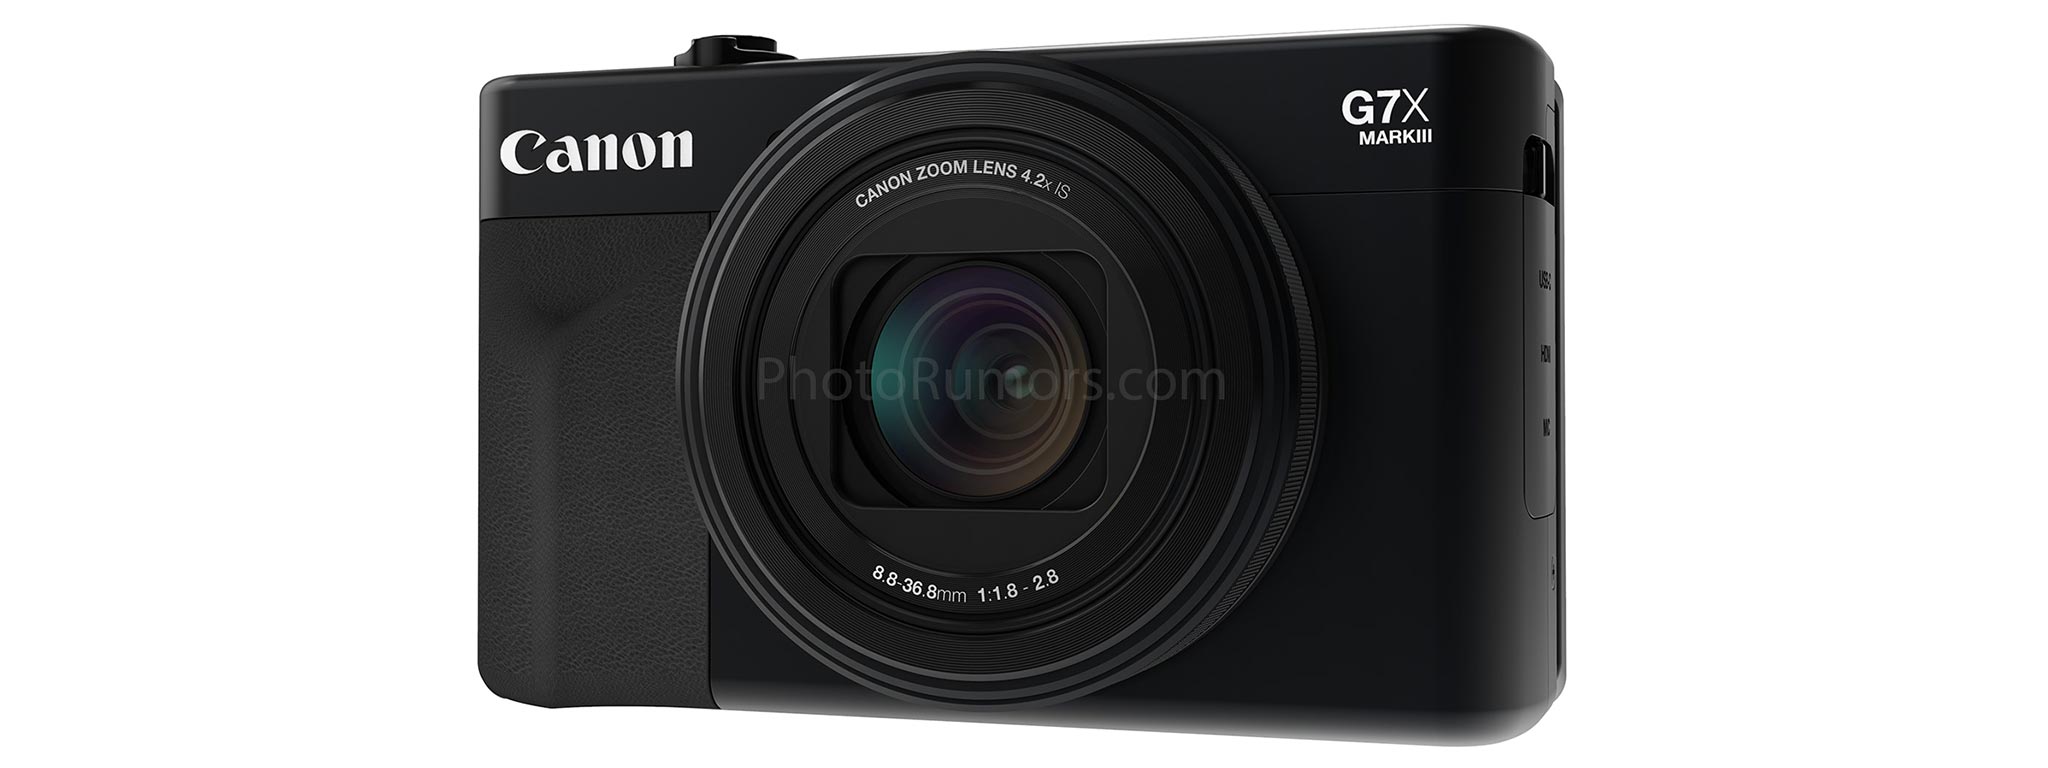 Đây có phải là Canon G7 X Mark III? Thiết kế mới, quay phim 4K 60p, USB-C?